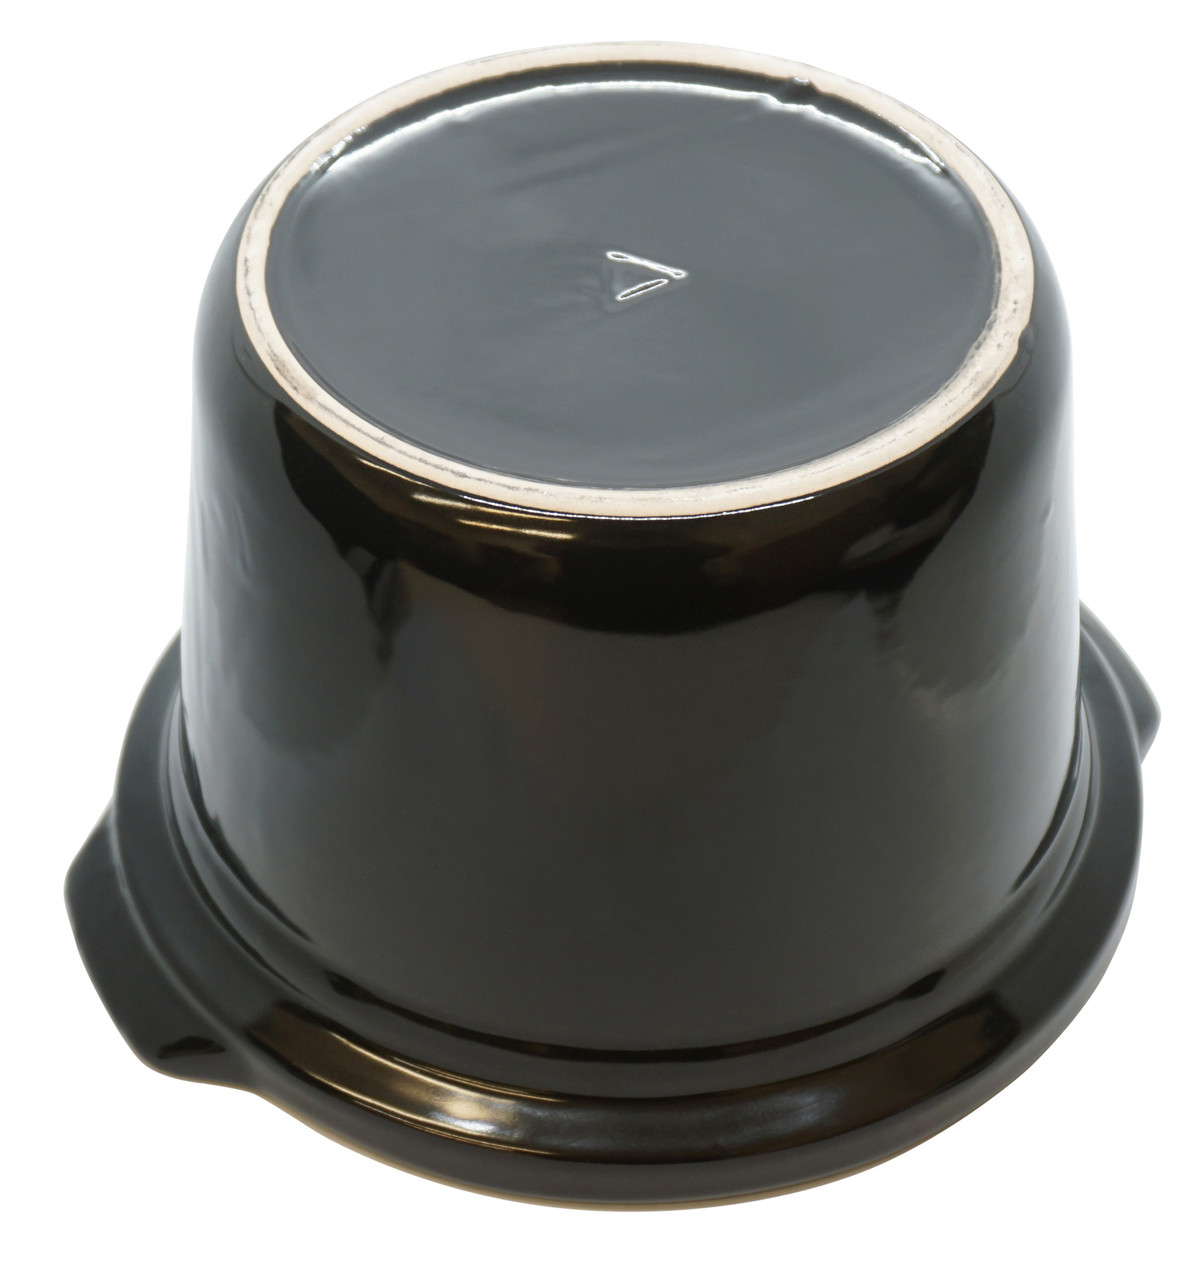 Oval Lid w/ Handles fits 4 Qt Crock-Pot Slow Cooker Stoneware,  163417-000-000 - Seneca River Trading, Inc.